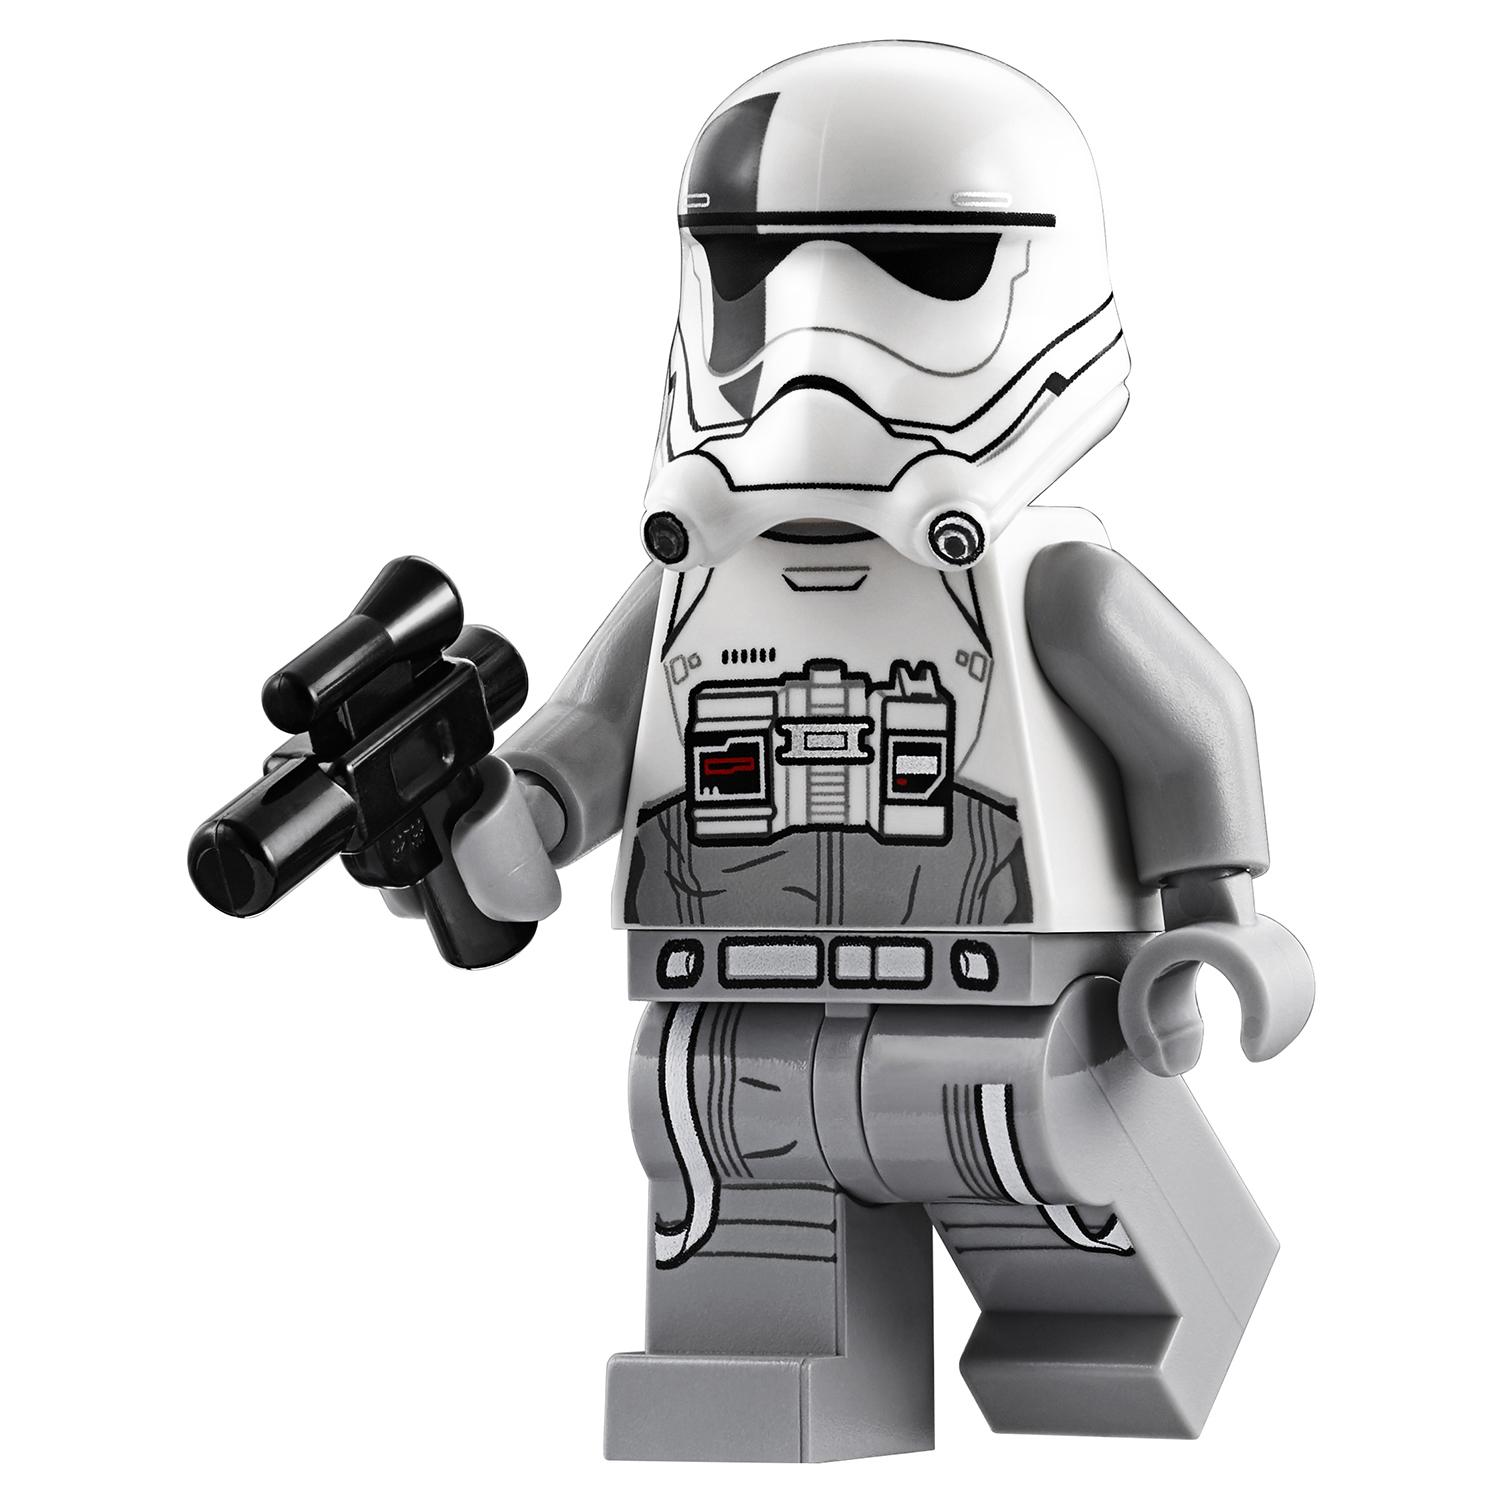 Lego Star Wars 75195 Бой пехотинцев Первого Ордена против спидера на лыжах